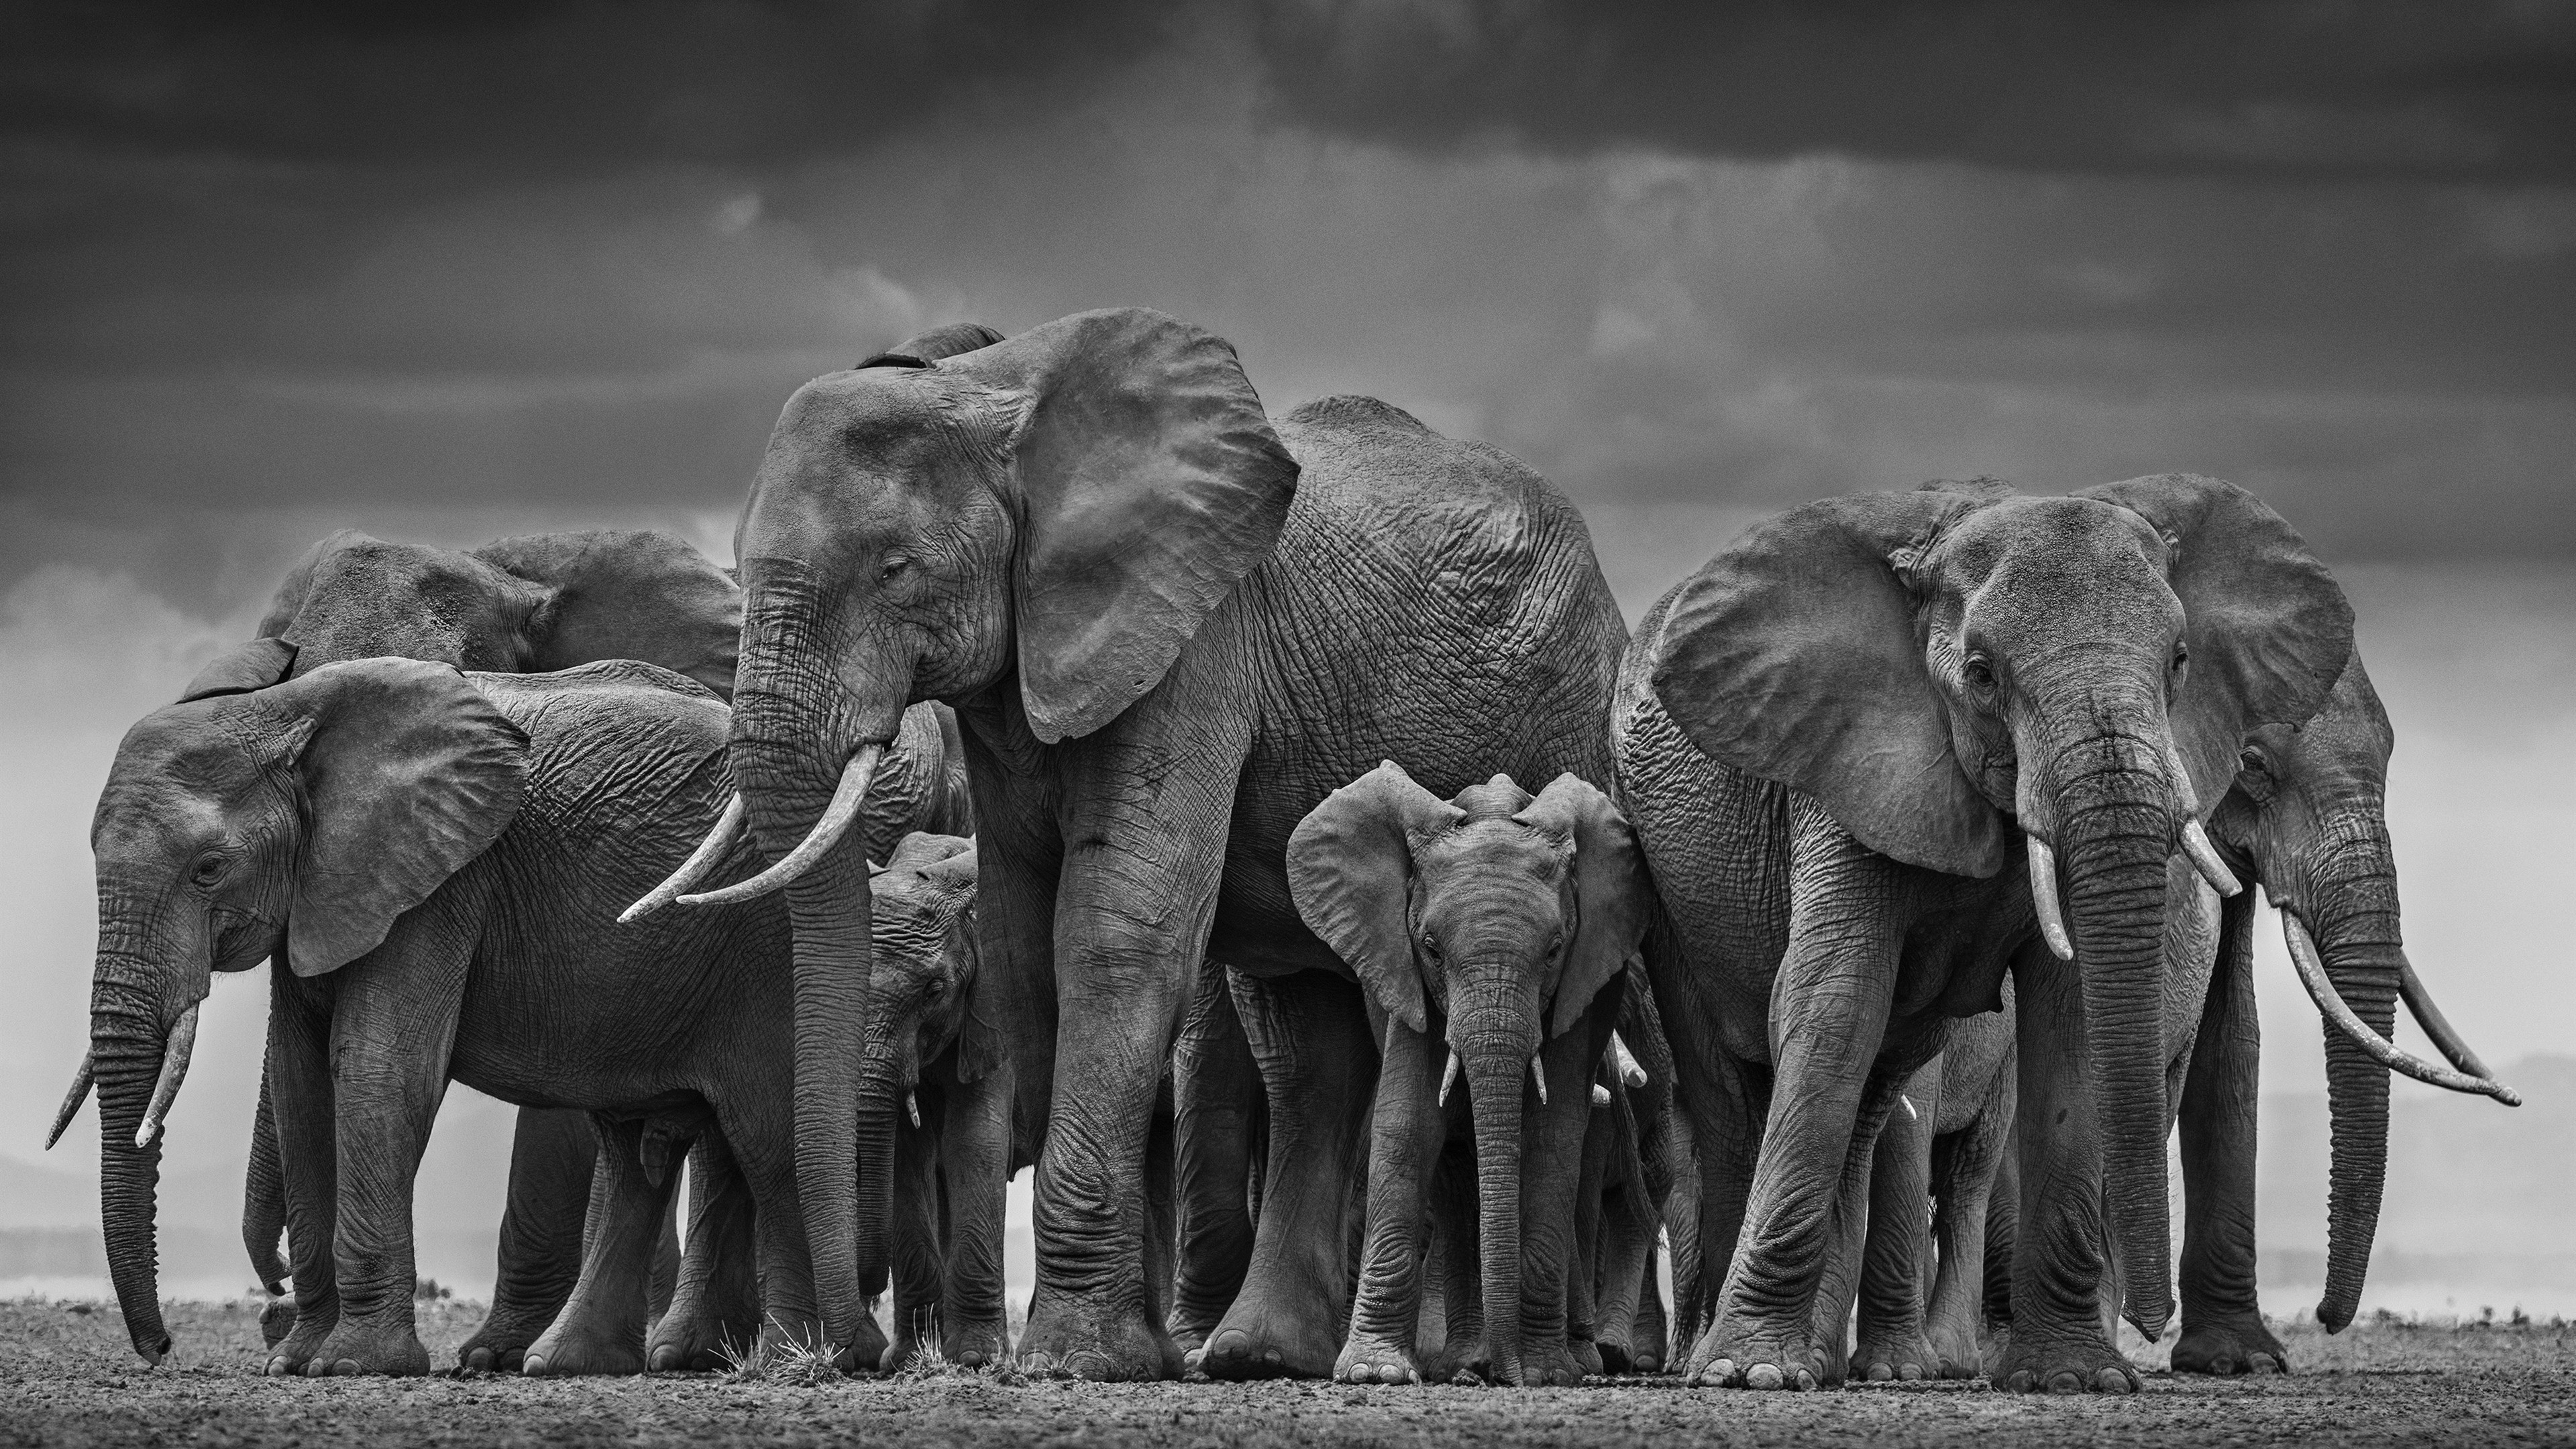 elefantentapete,elefant,elefanten und mammuts,landtier,tierwelt,indischer elefant